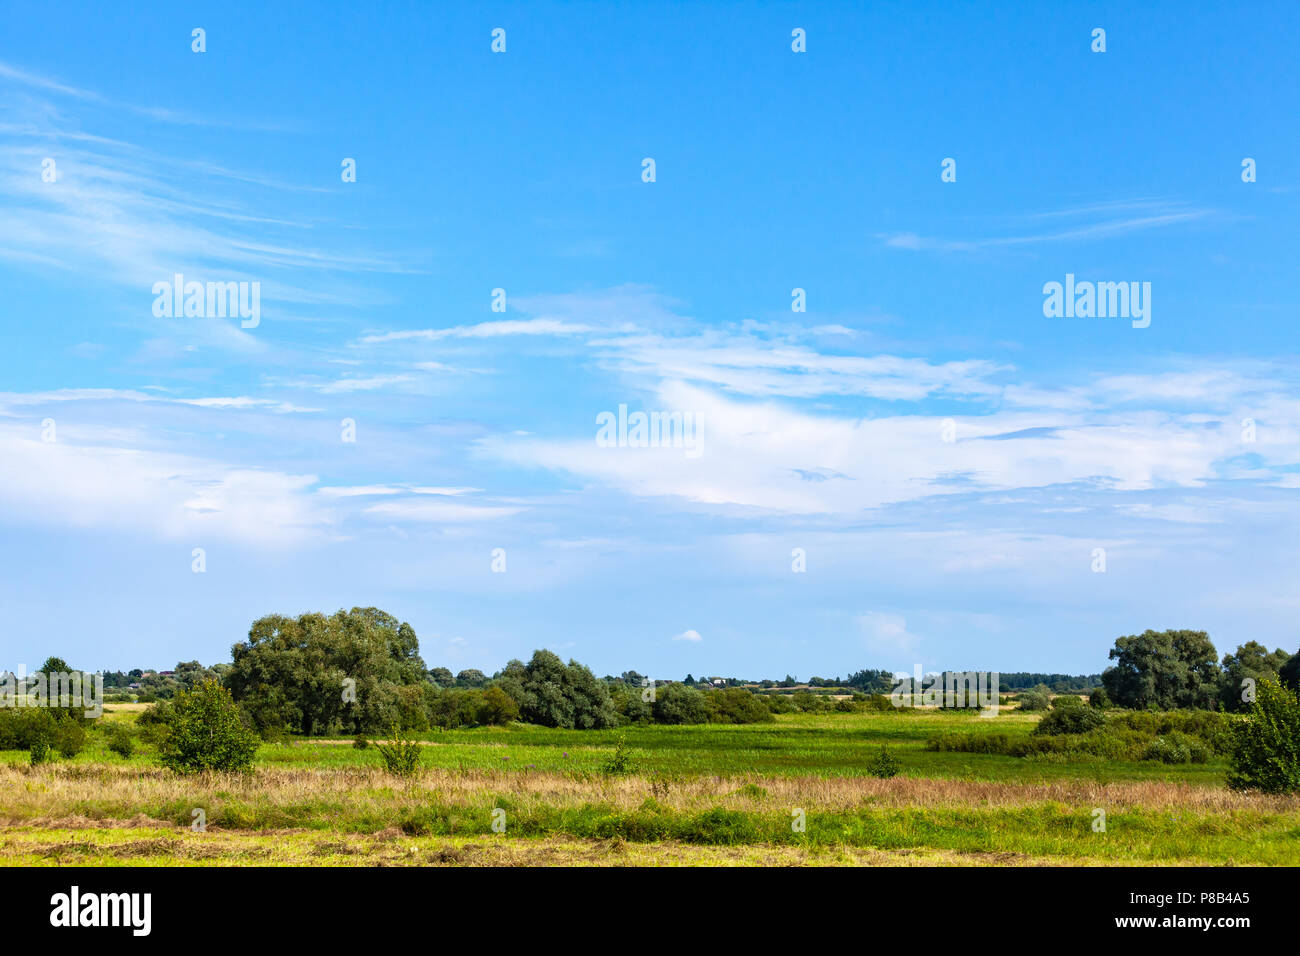 Ländliche russische Landschaft mit Wiesen und Wäldern unter blauen bewölkten Himmel im Sommer Tag. Novgorod oblast, Russland Stockfoto